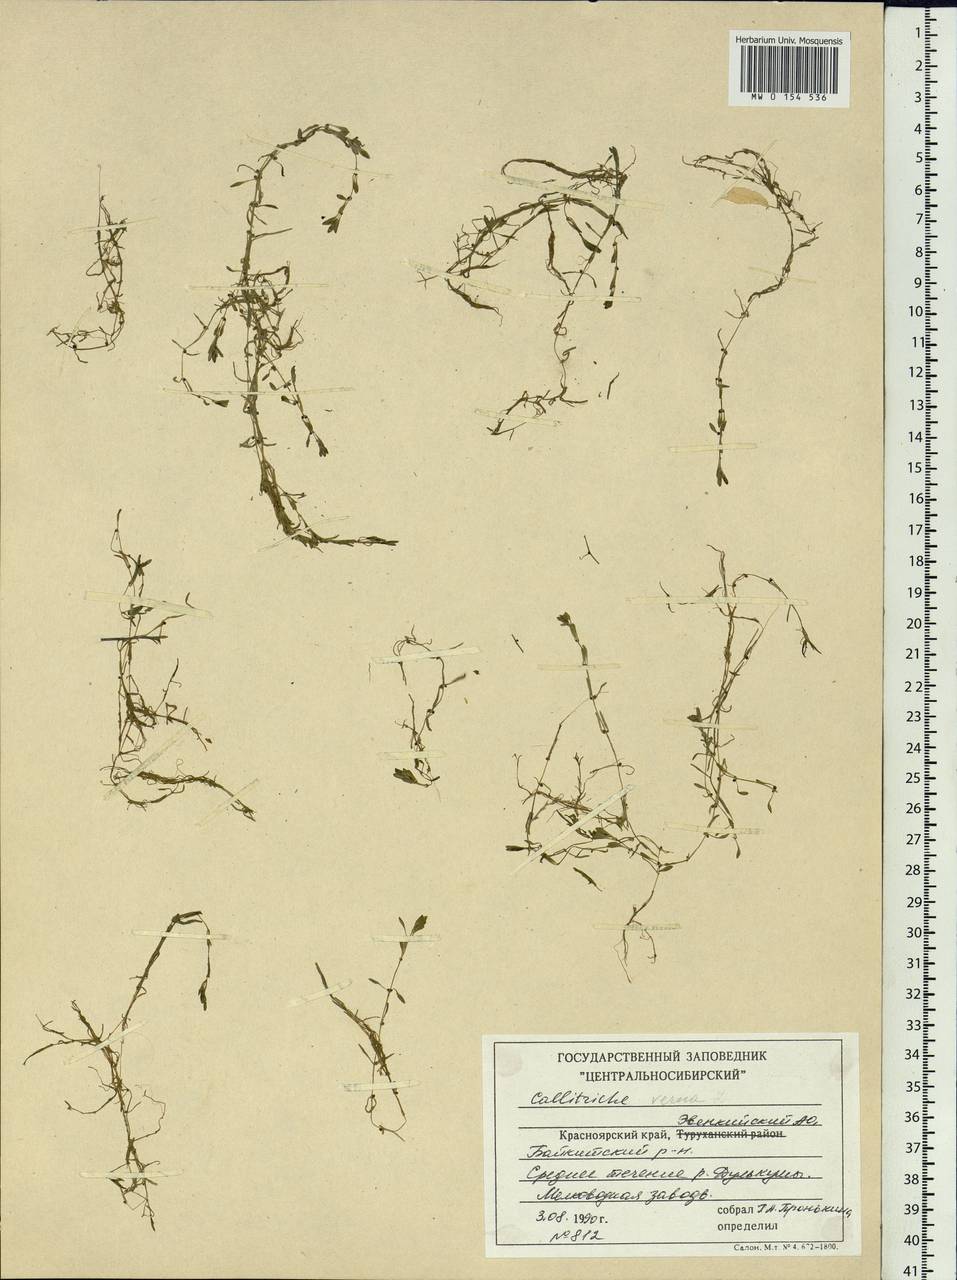 Callitriche palustris L., Siberia, Central Siberia (S3) (Russia)